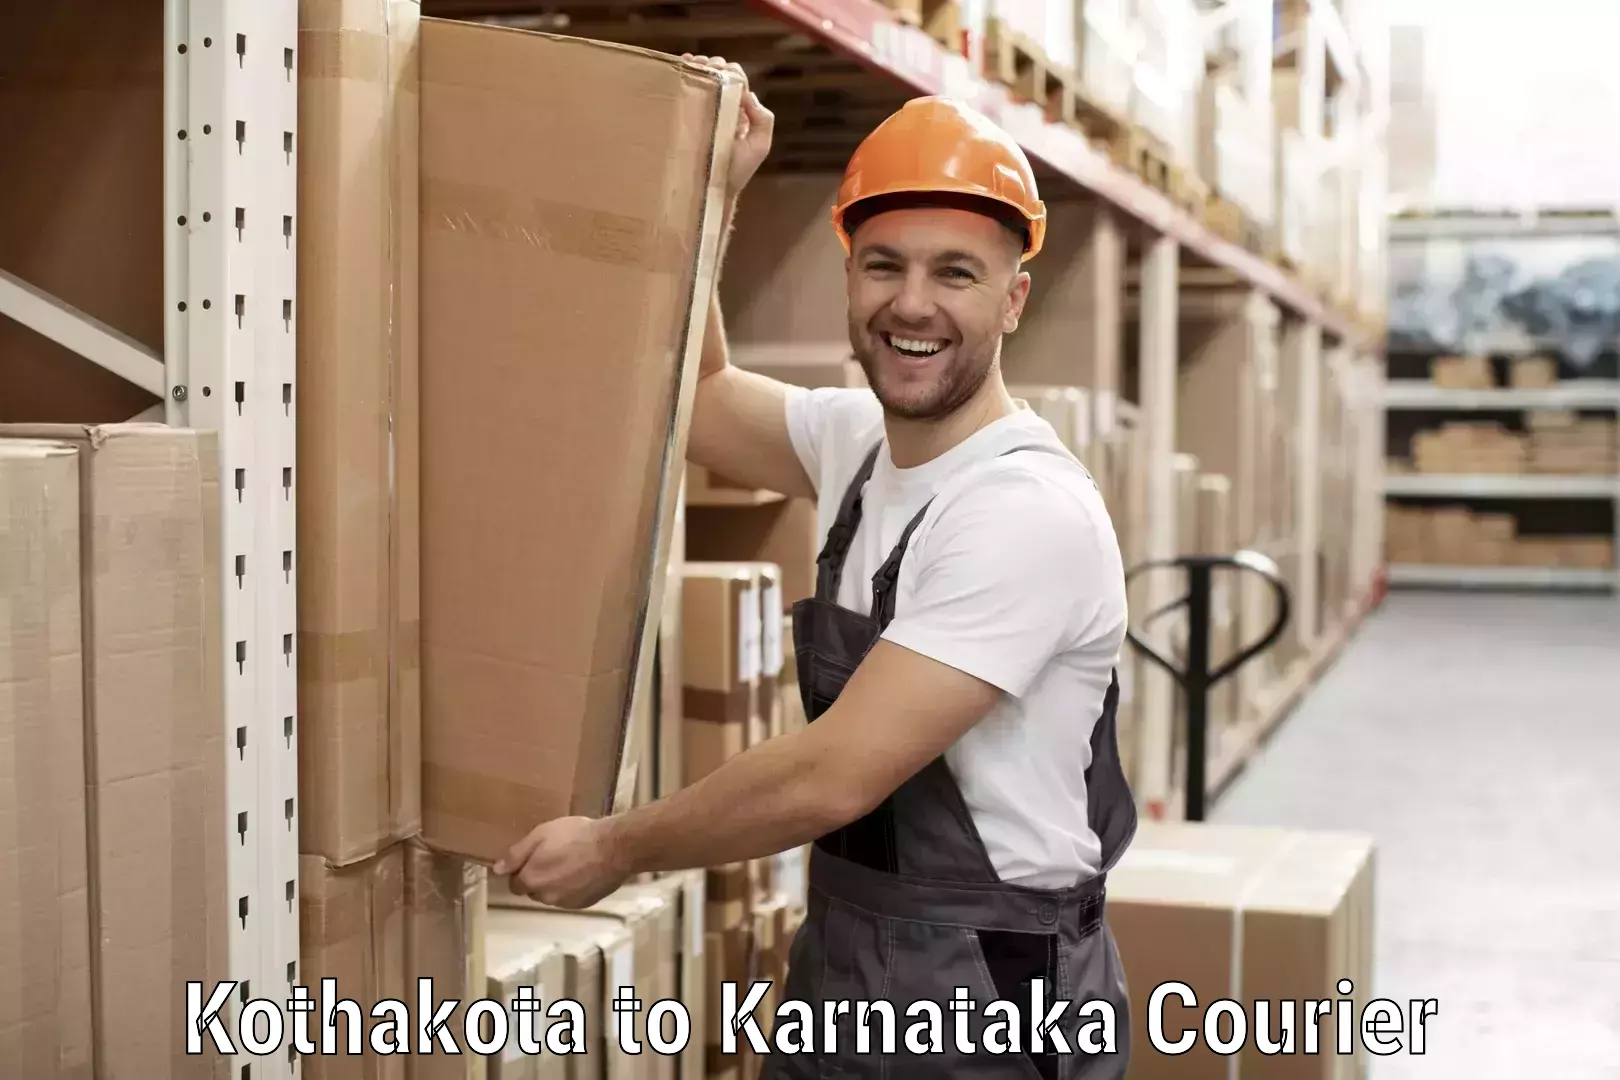 Retail shipping solutions Kothakota to Karnataka